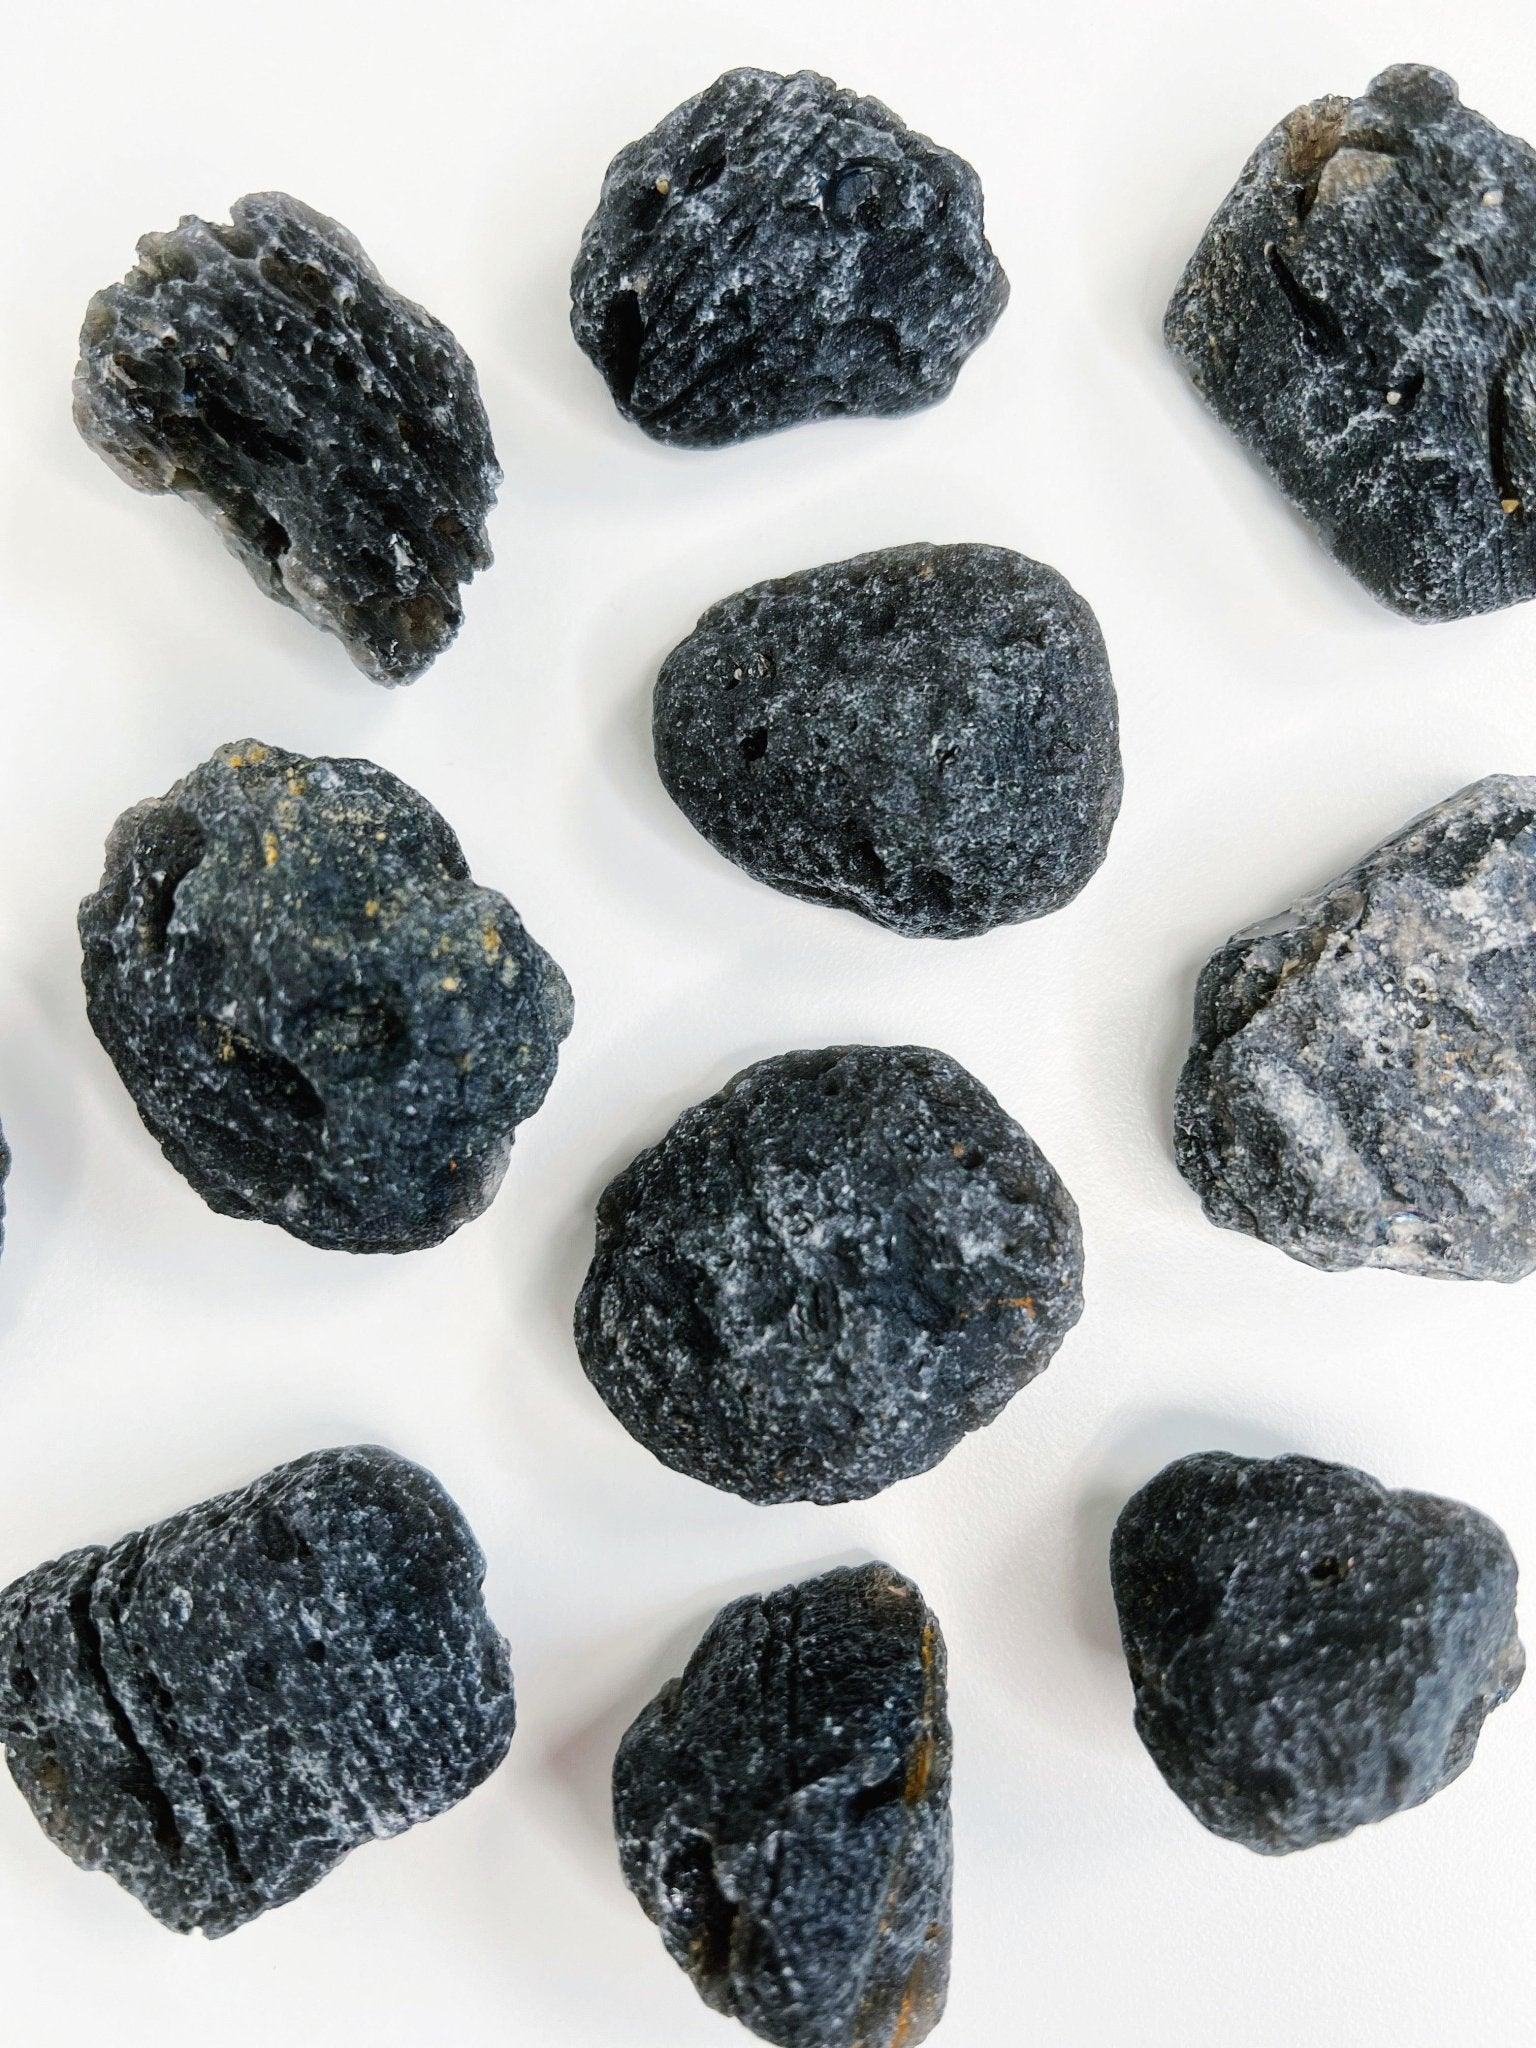 AGNI MANITITE (TEKTITE/PSEUDOTEKTITE) - agni manitite, pseudotektite, tektite - The Mineral Maven